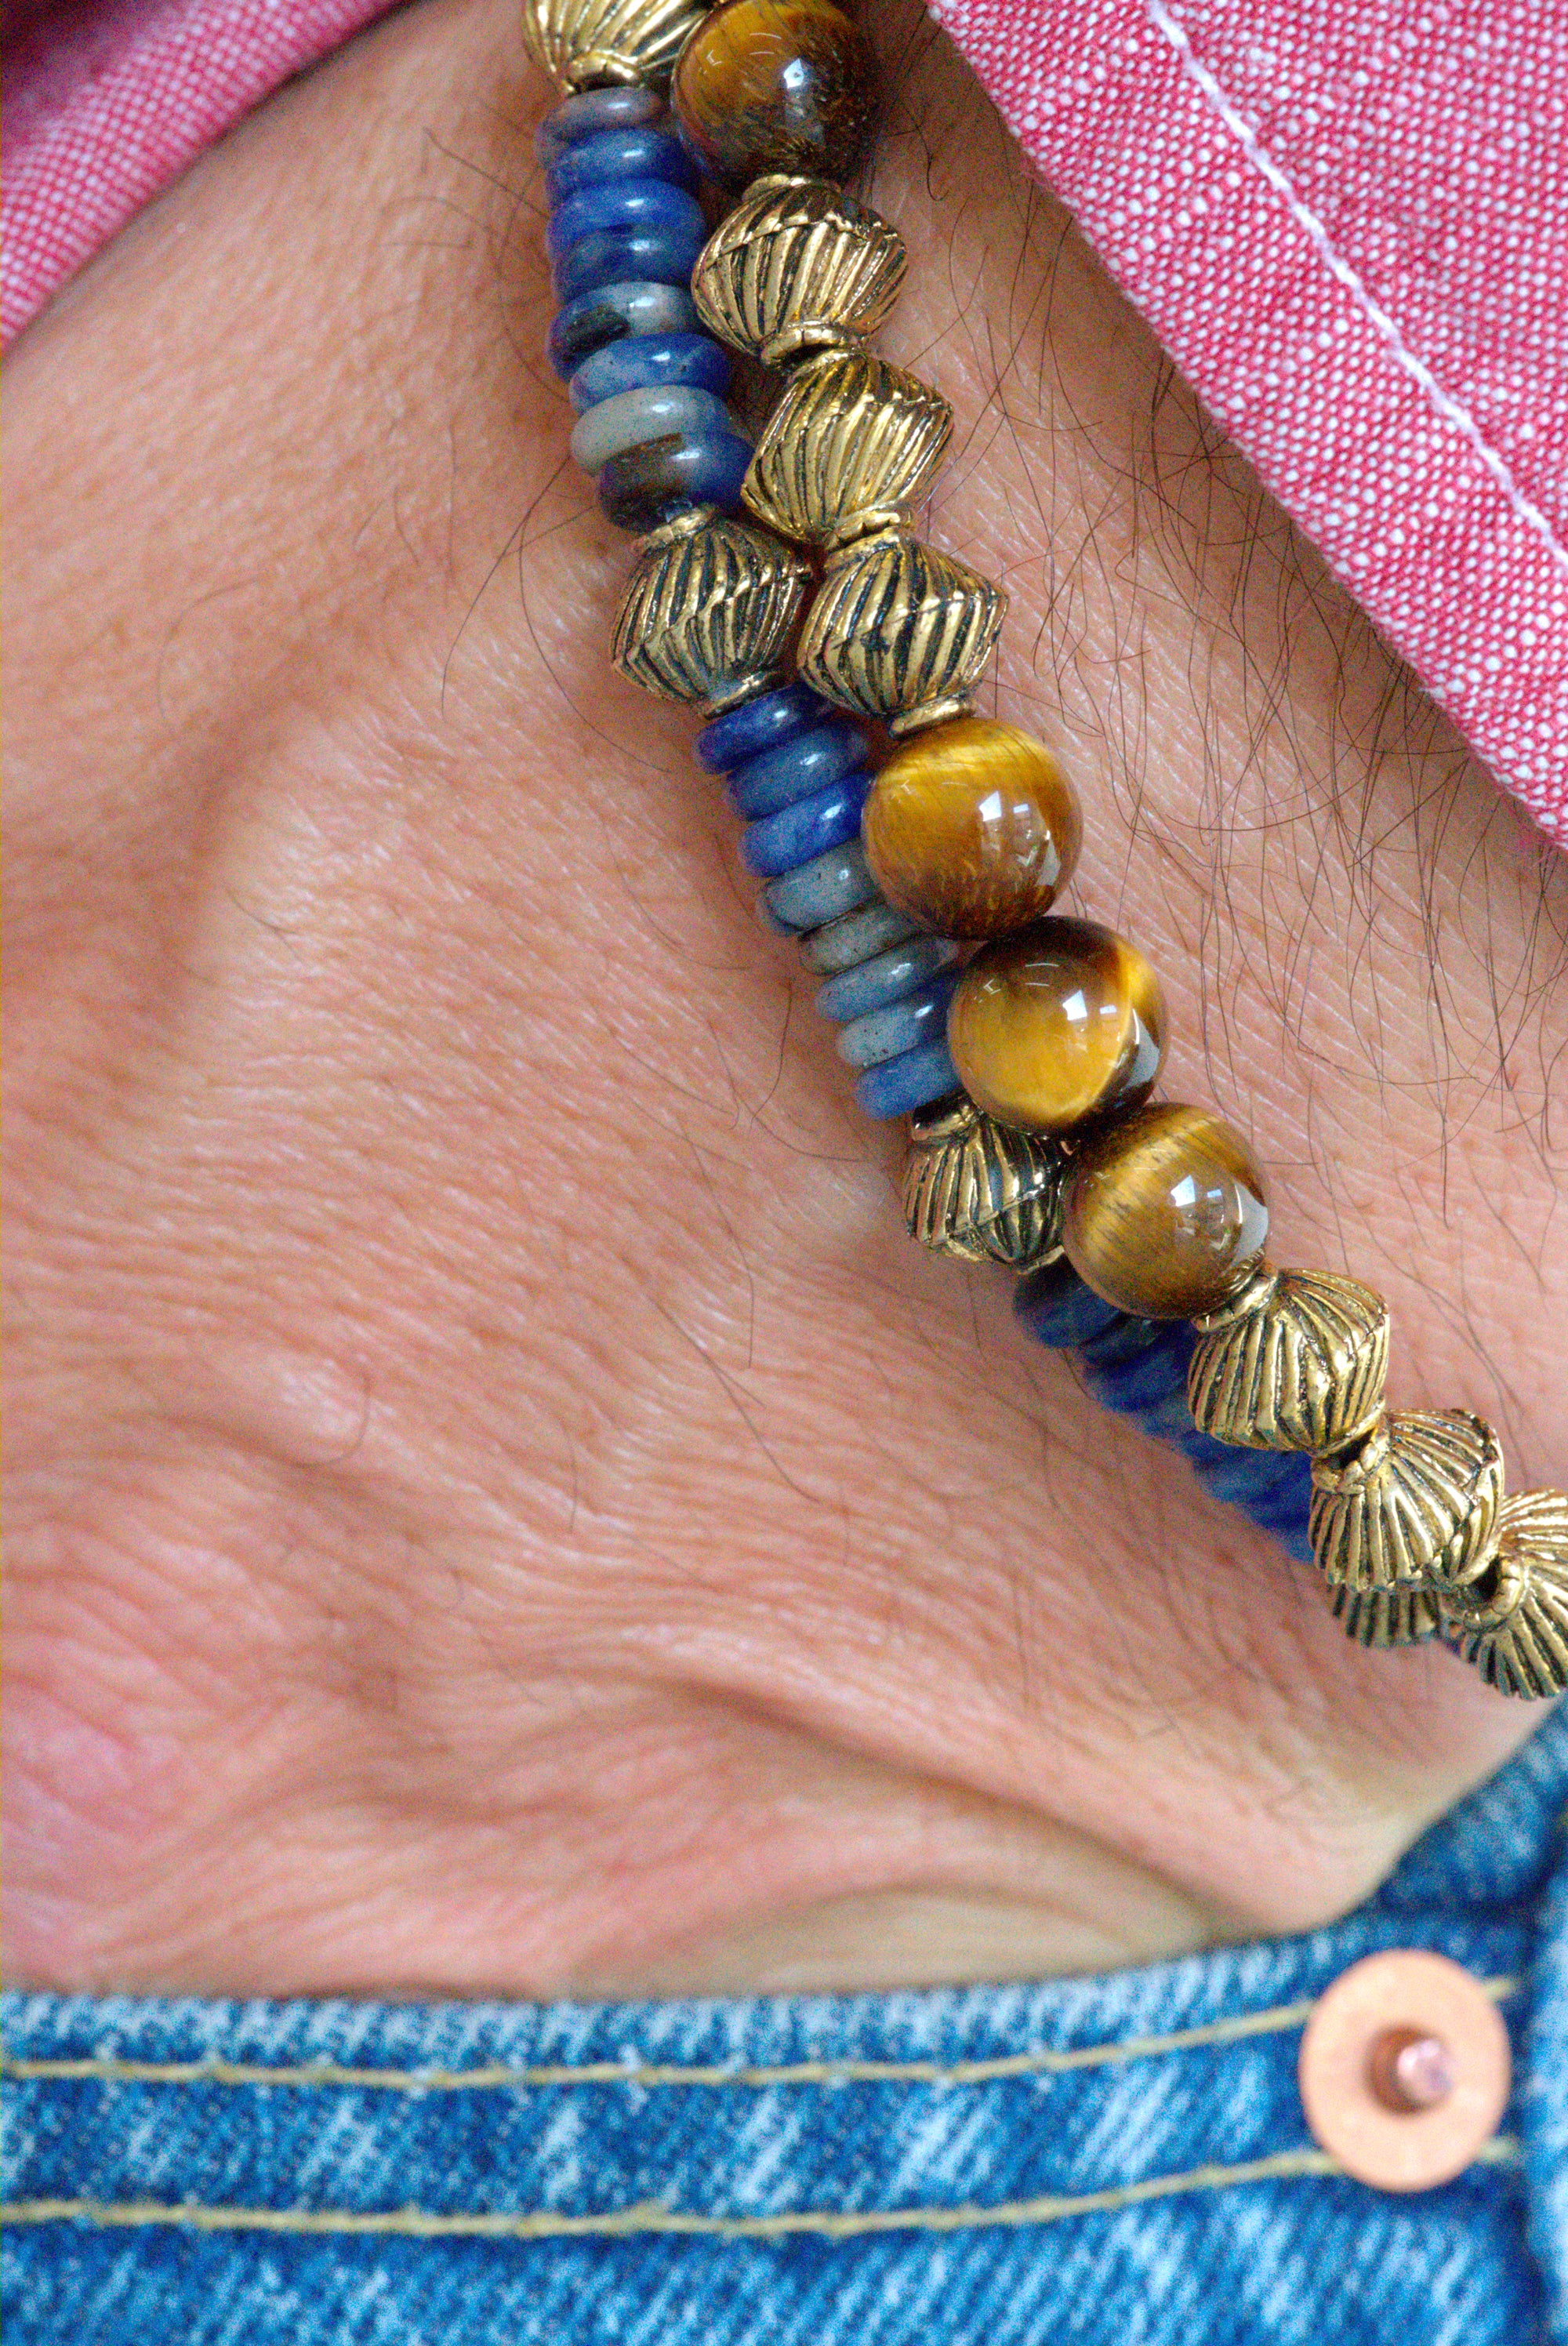 Tranquility stone bracelet set by Jenny Dayco 9